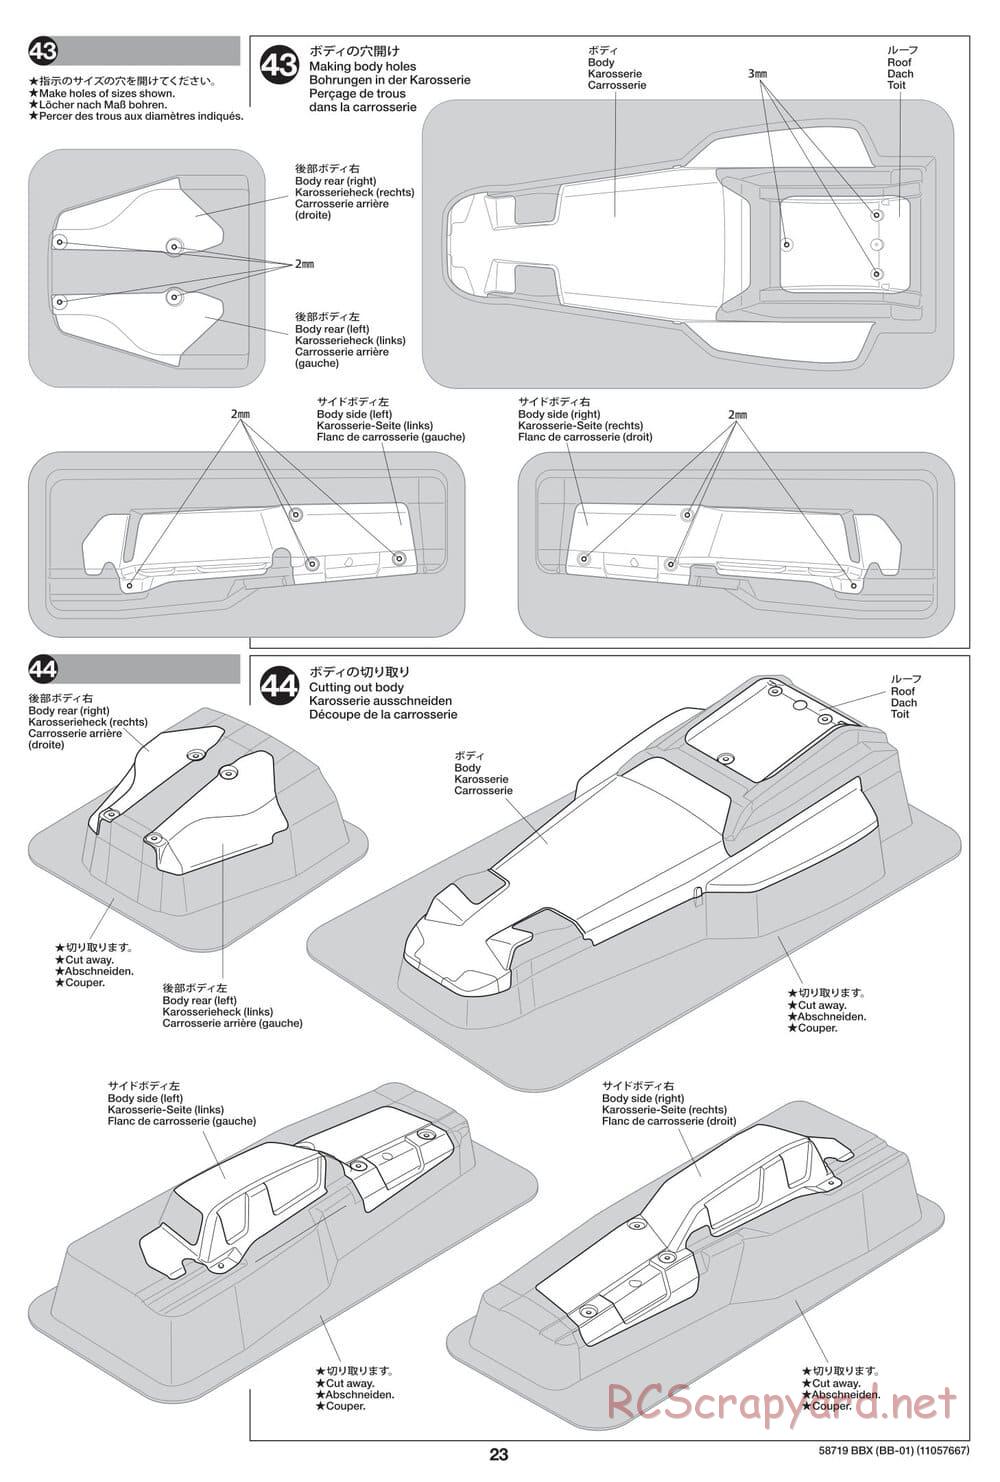 Tamiya - BBX - BB-01 Chassis - Manual - Page 23